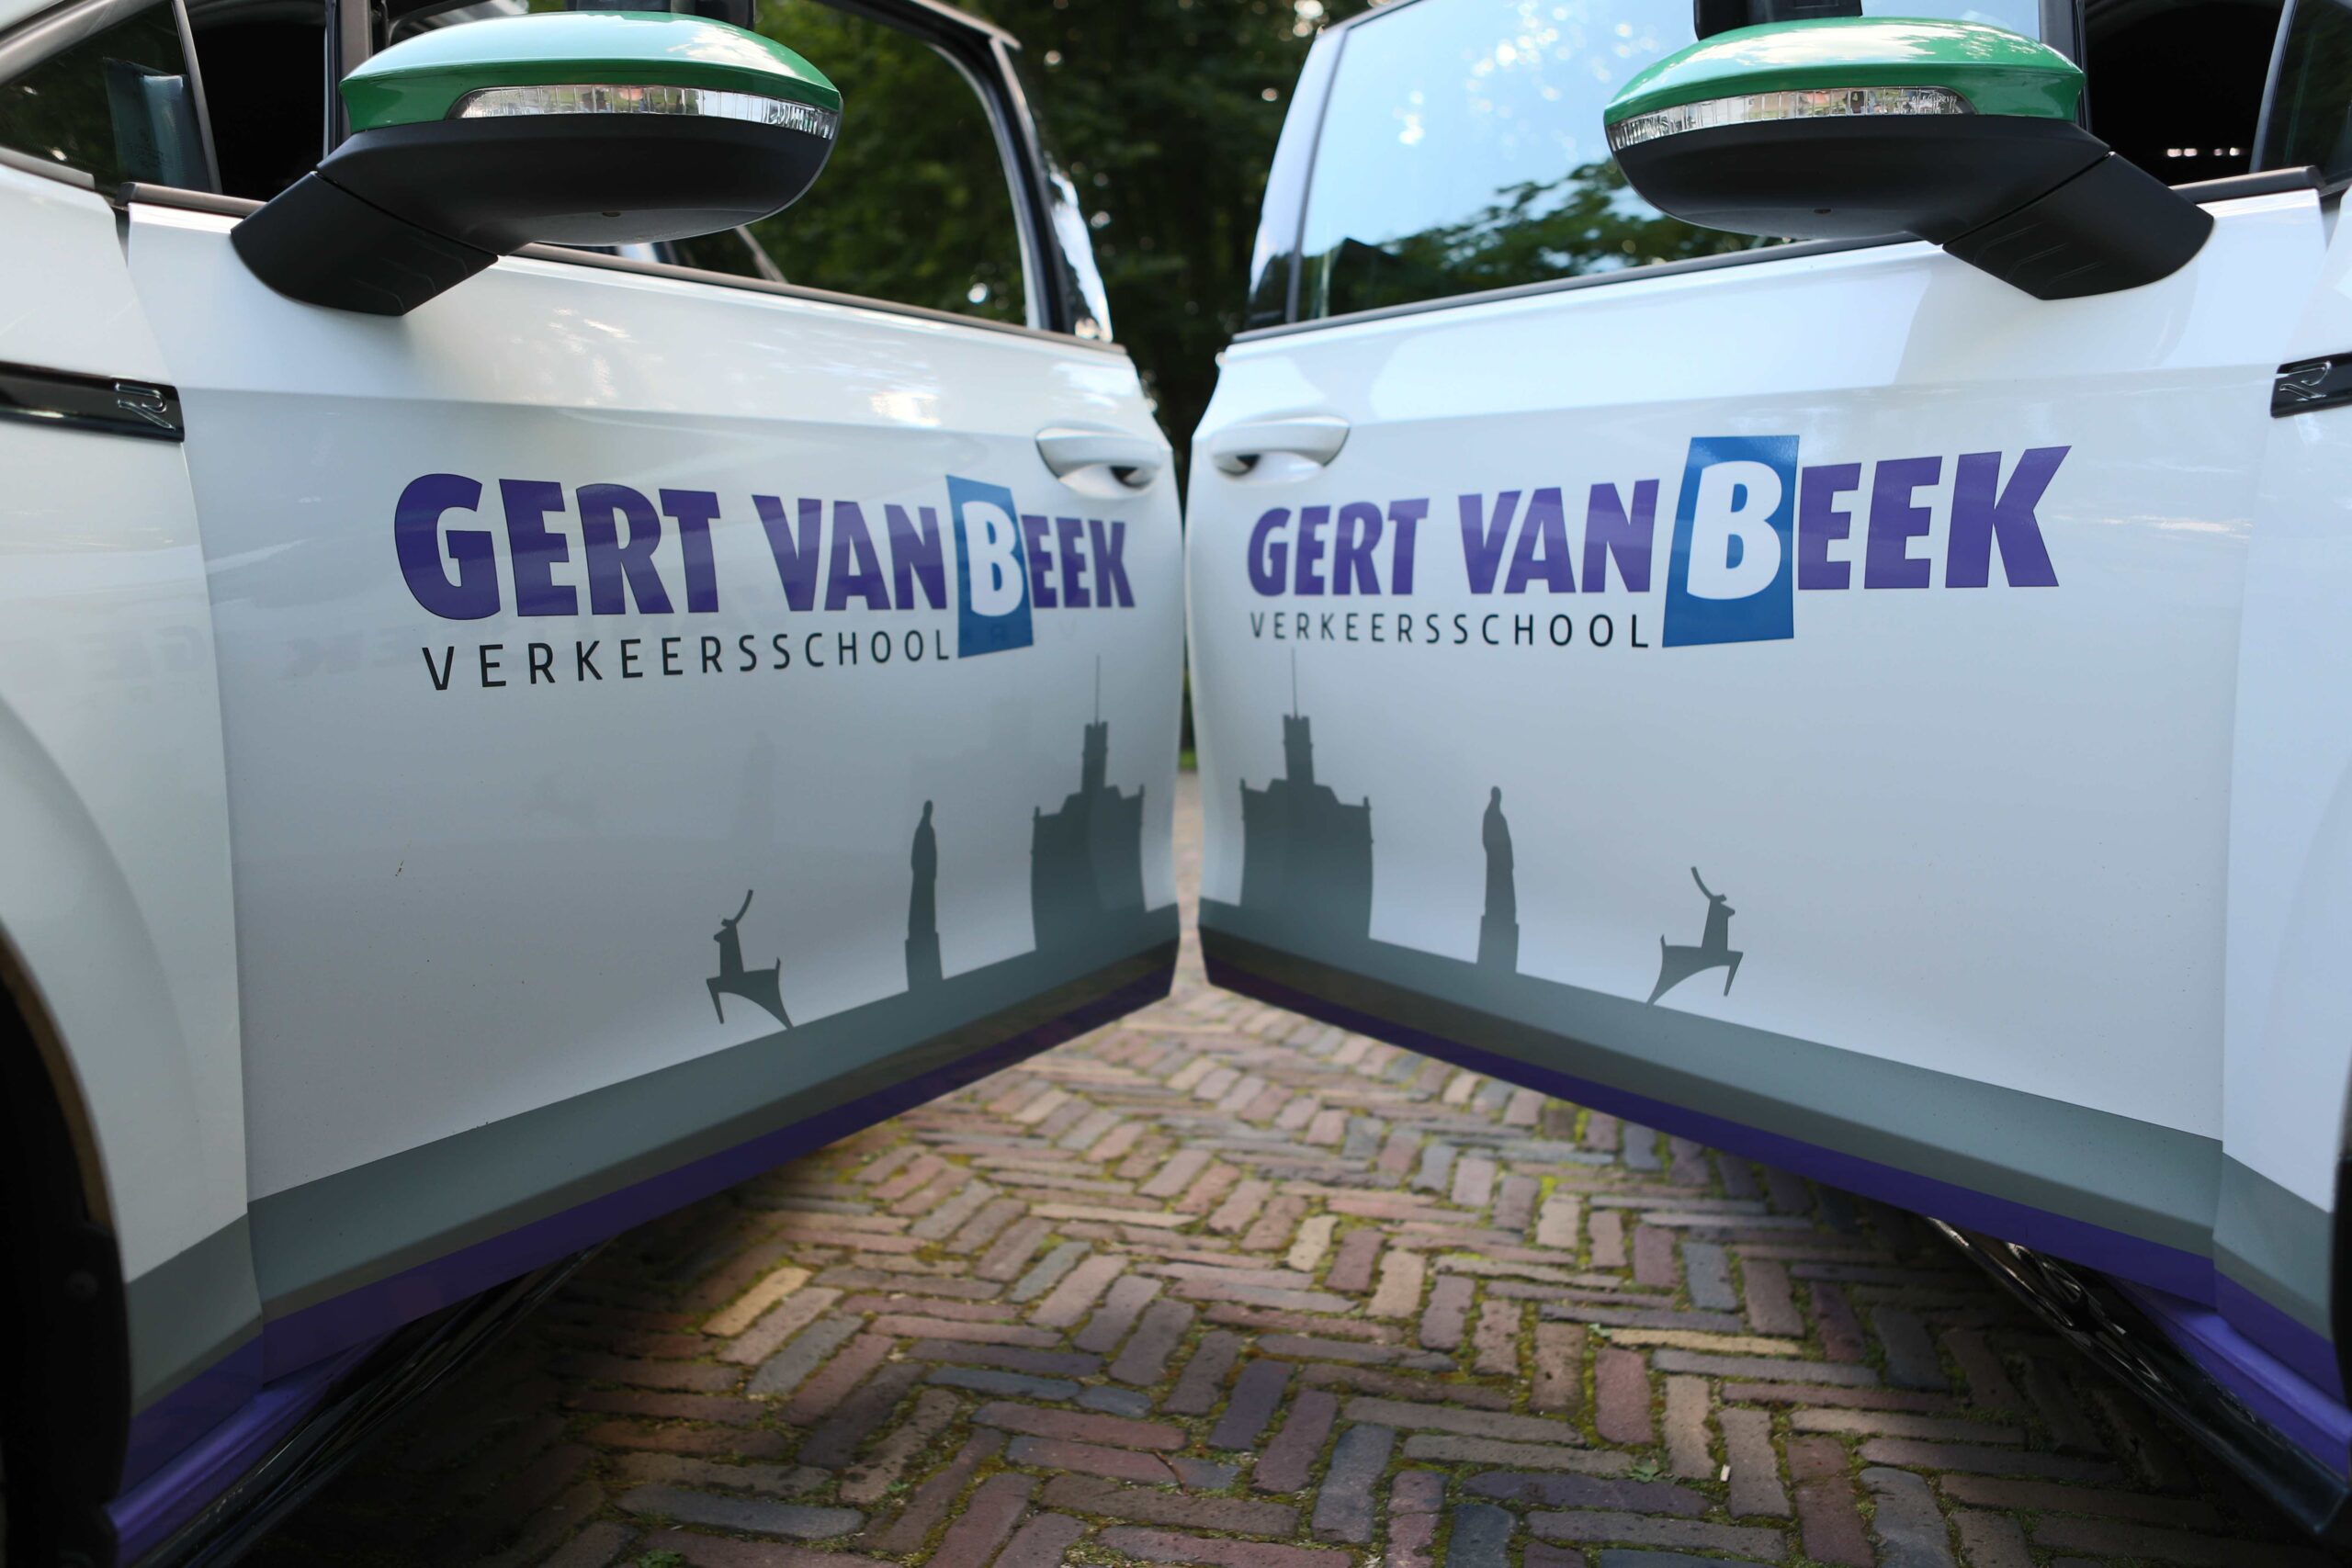 Verkeersschool Gert van Beek